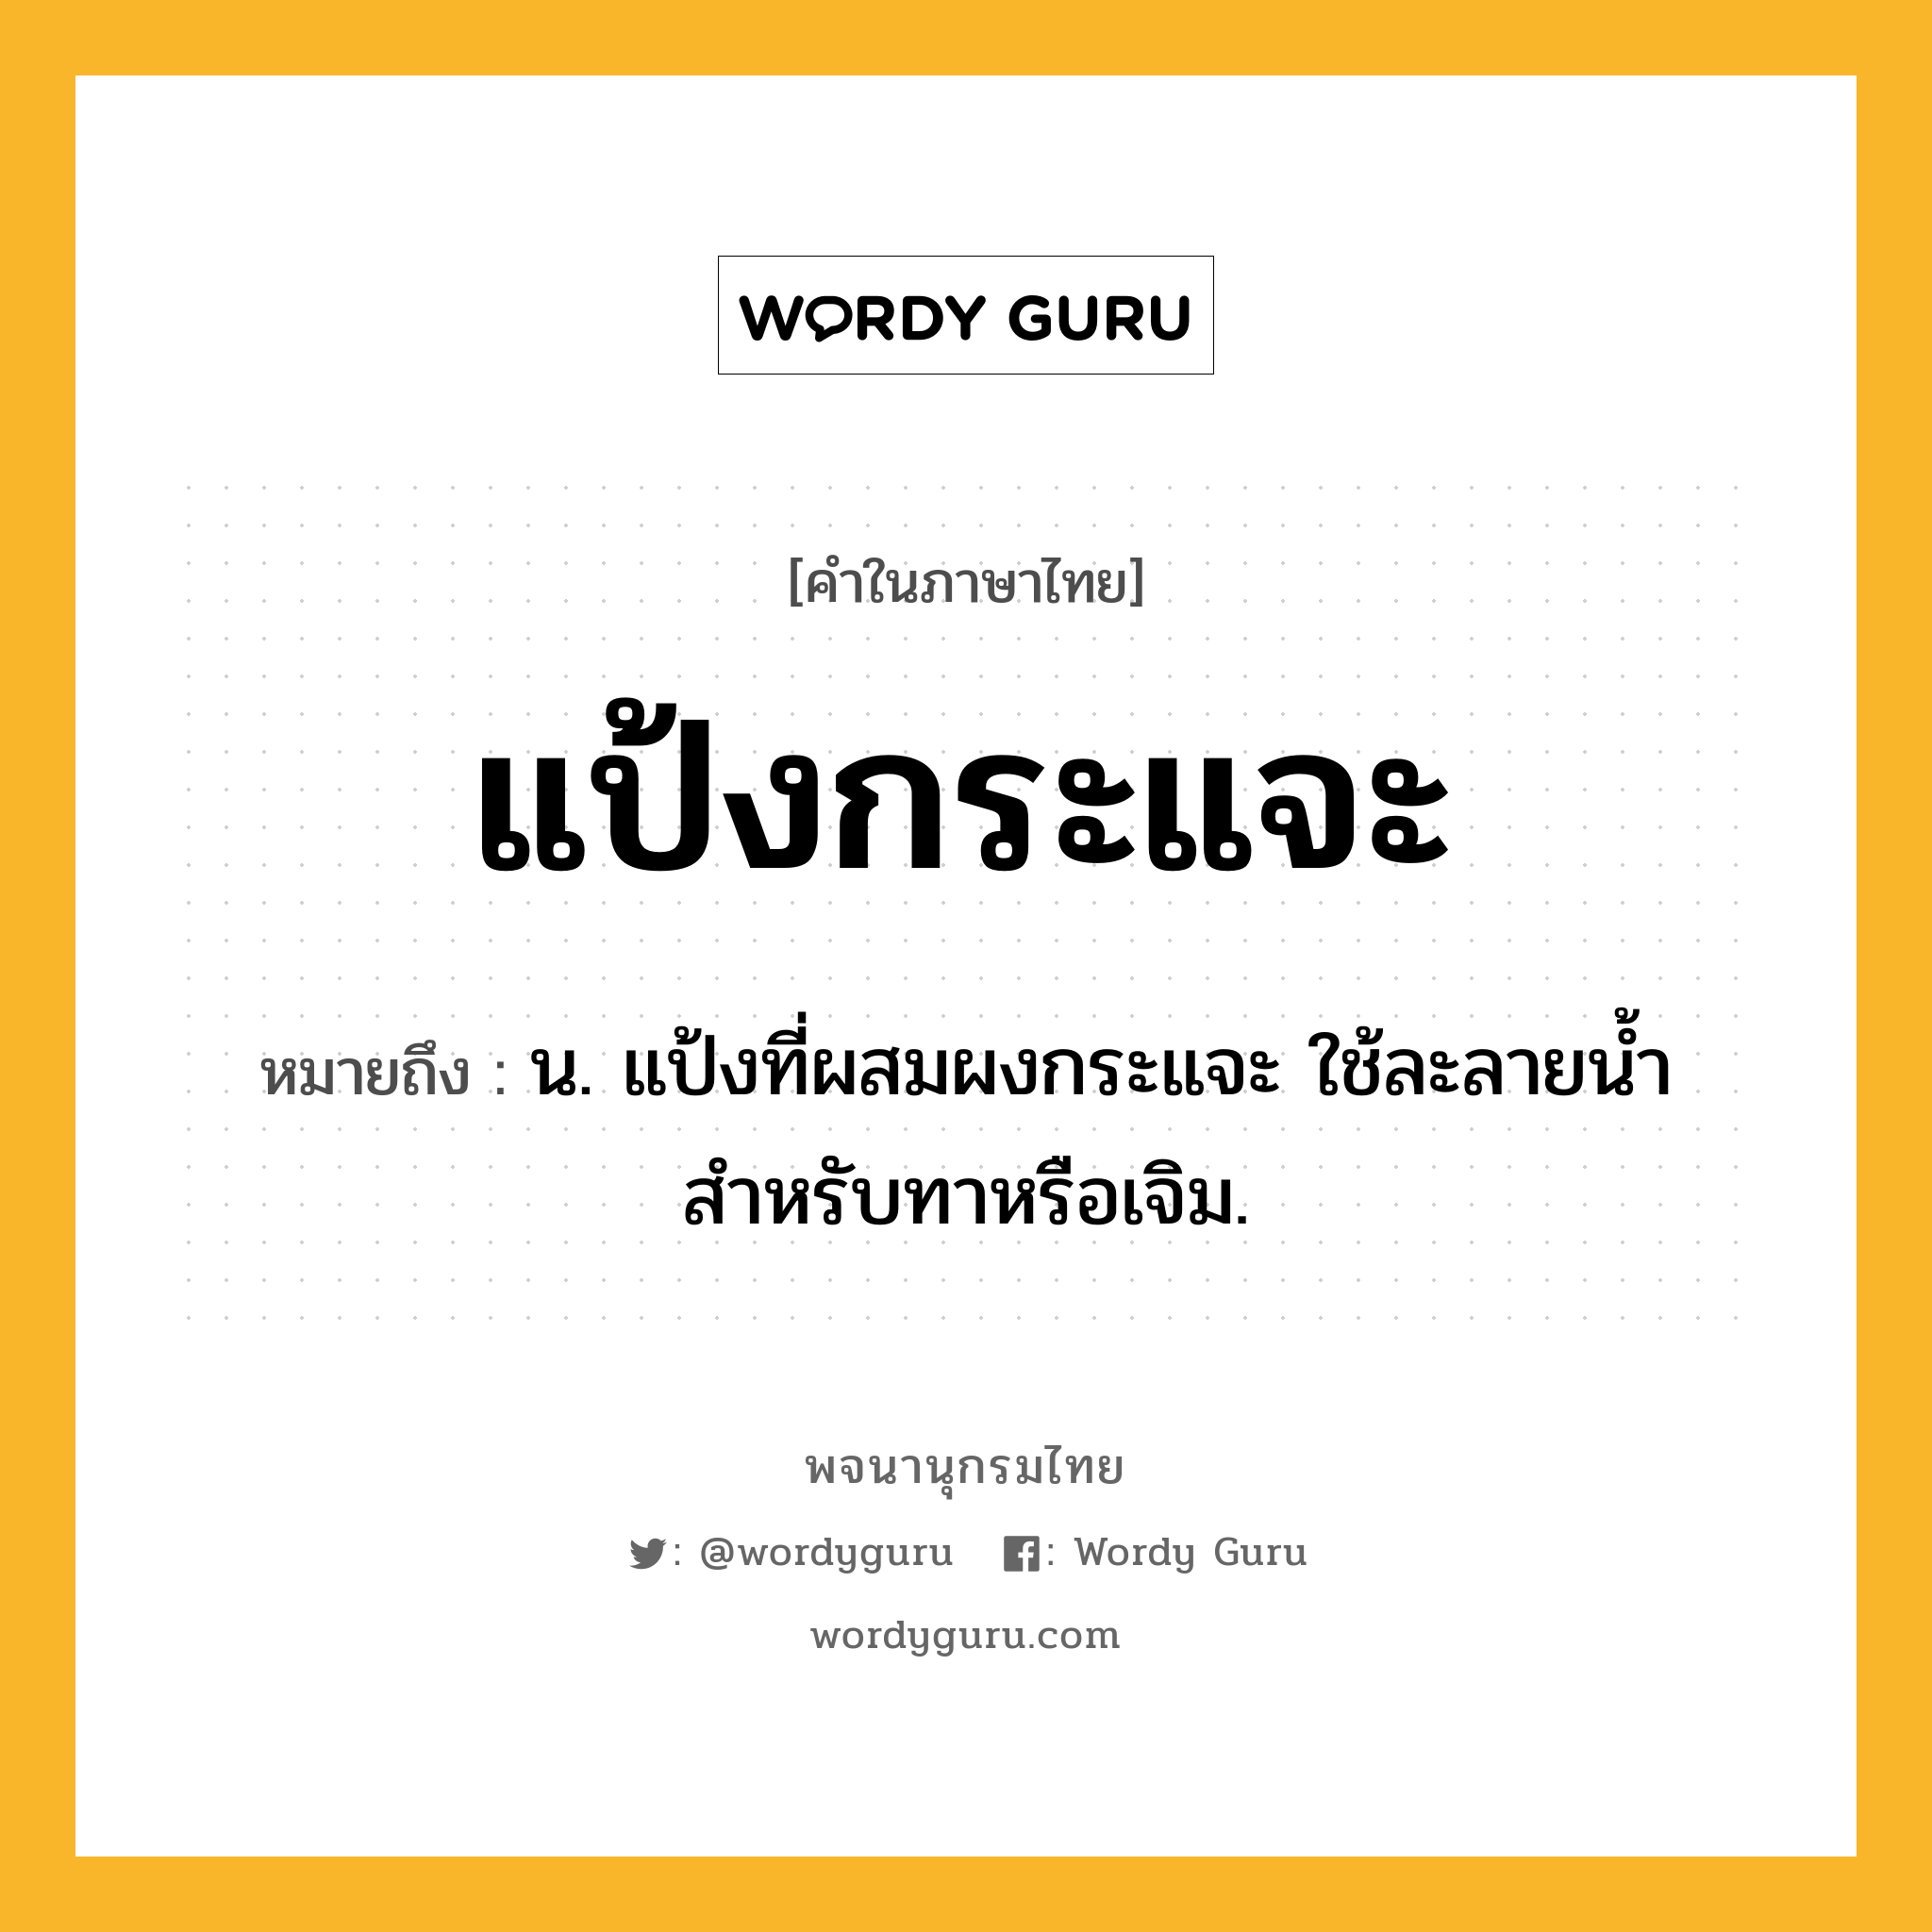 แป้งกระแจะ ความหมาย หมายถึงอะไร?, คำในภาษาไทย แป้งกระแจะ หมายถึง น. แป้งที่ผสมผงกระแจะ ใช้ละลายน้ำ สำหรับทาหรือเจิม.